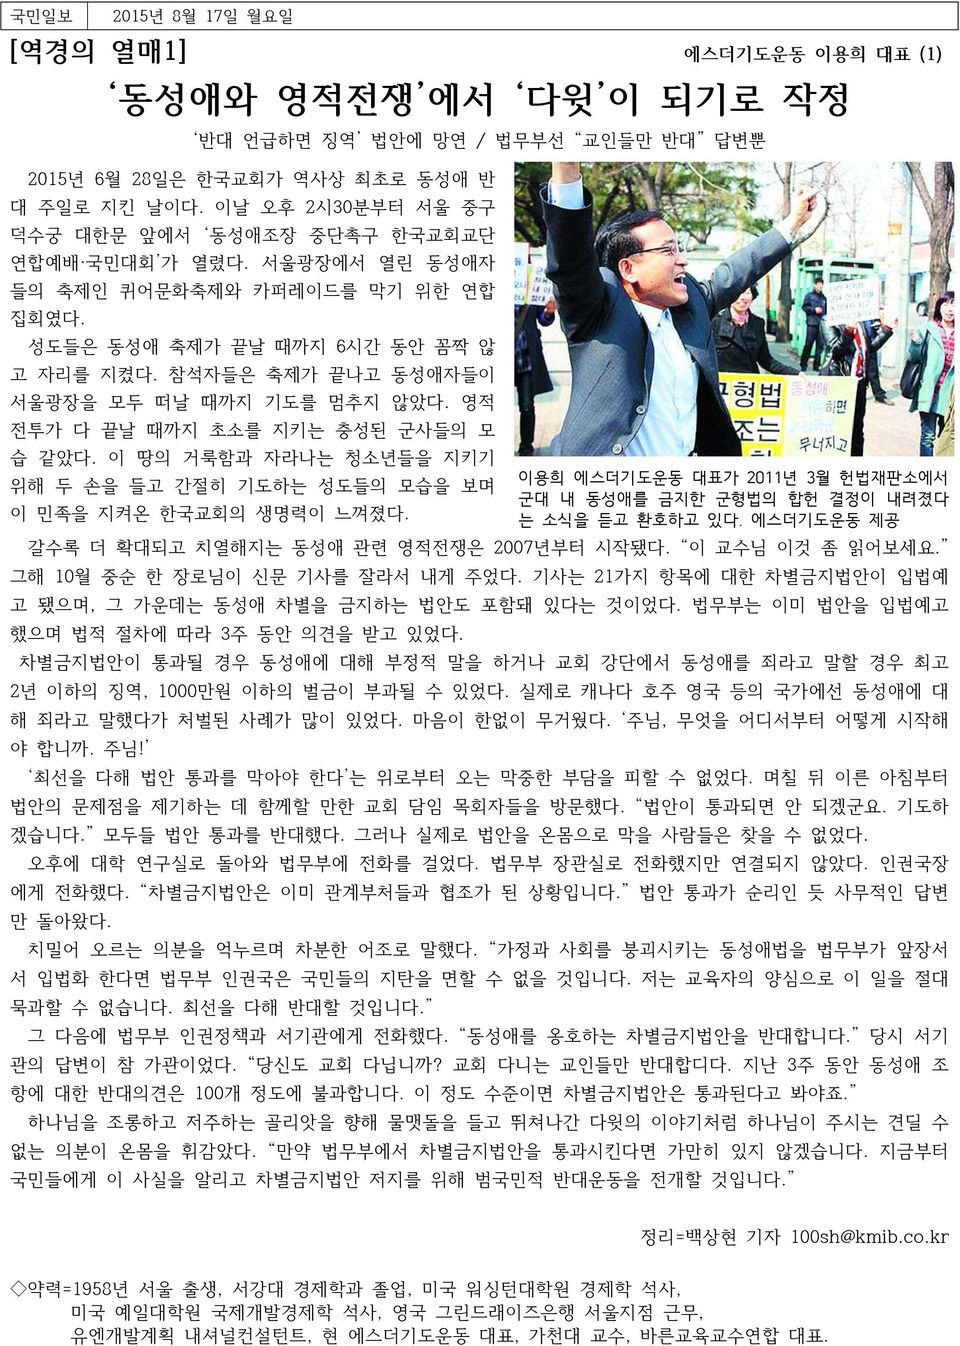 참석자들은 축제가 끝나고 동성애자들이 서울광장을 모두 떠날 때까지 기도를 멈추지 않았다. 영적 전투가 다 끝날 때까지 초소를 지키는 충성된 군사들의 모 습 같았다. 이 땅의 거룩함과 자라나는 청소년들을 지키기 위해 두 손을 들고 간절히 기도하는 성도들의 모습을 보며 이 민족을 지켜온 한국교회의 생명력이 느껴졌다.